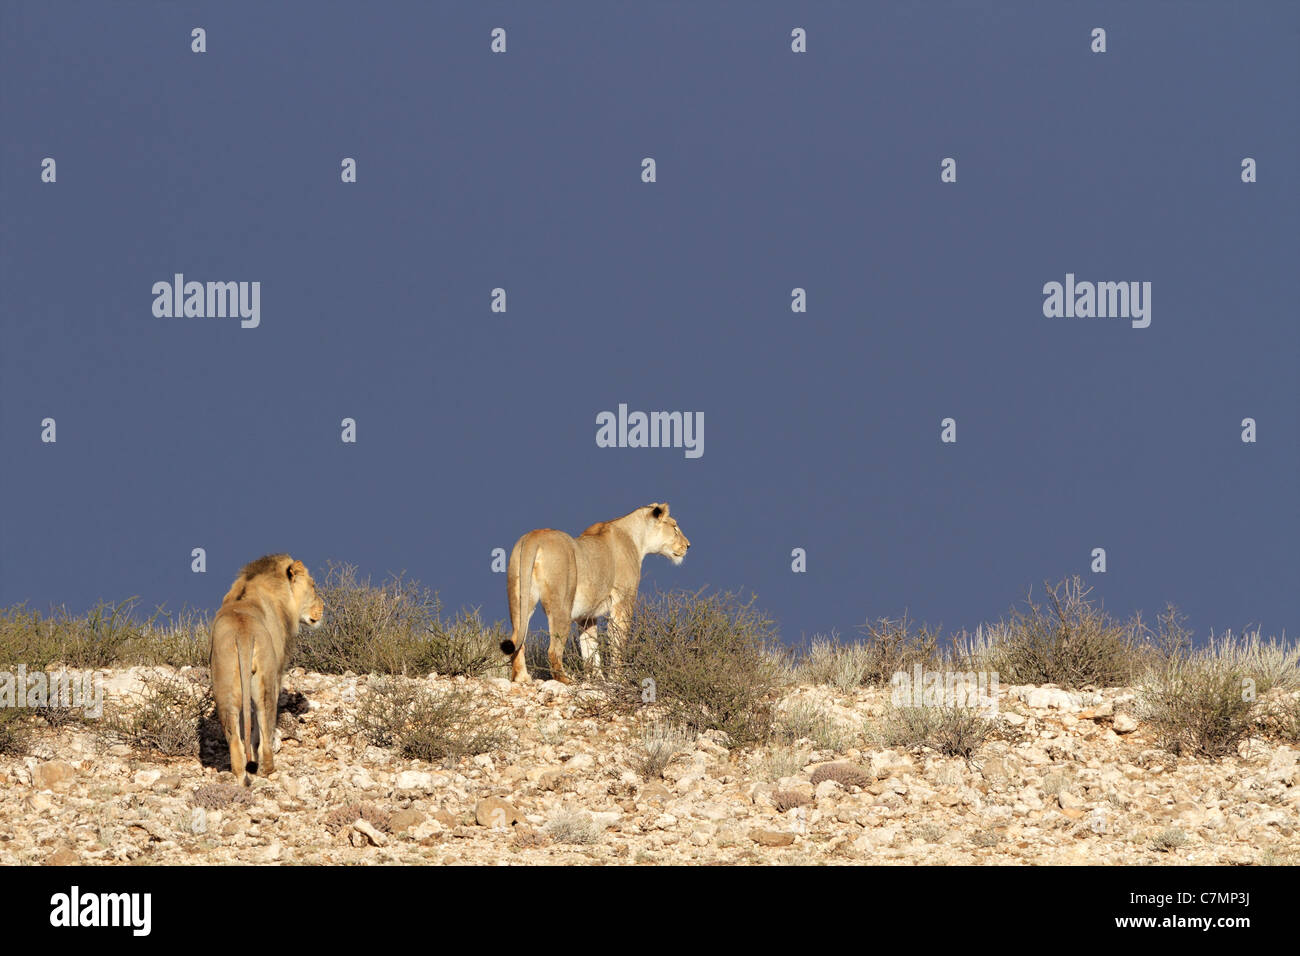 Two African lions (Panthera leo) walking in Kalahari desert landscape, South Africa Stock Photo